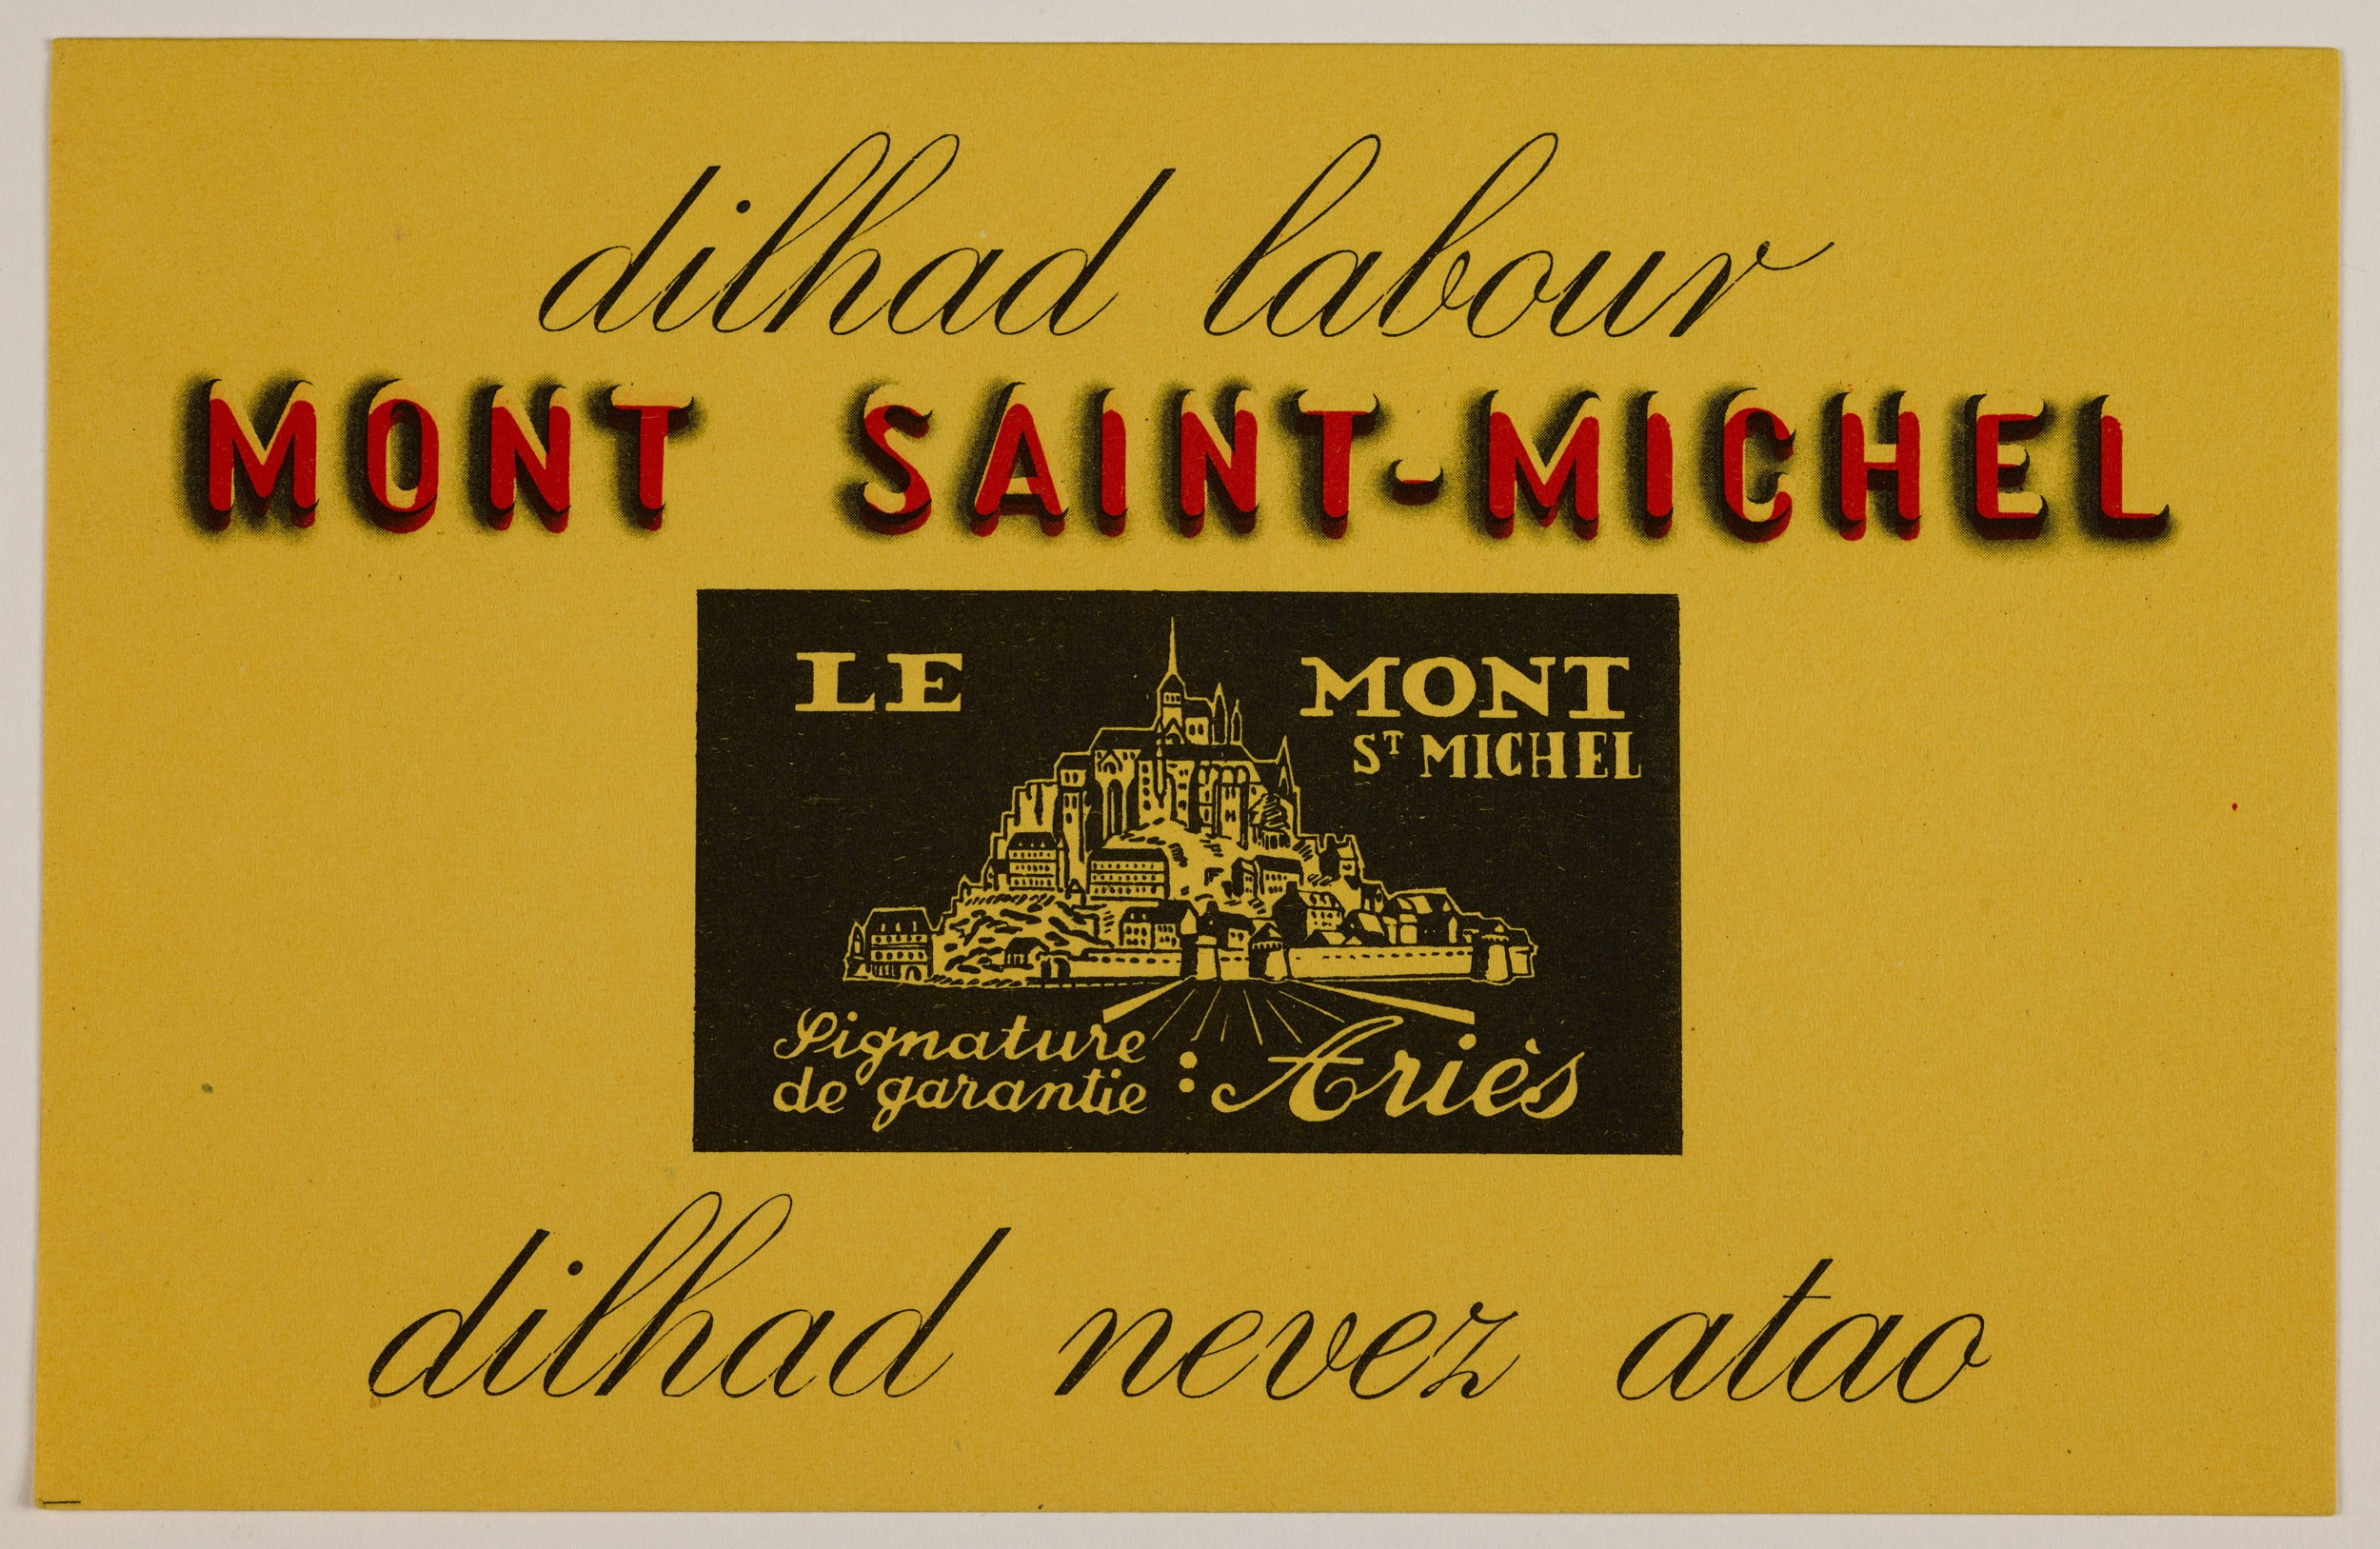 Publicité en breton de la marque Mont-Saint-Michel Ariès. « Vêtements de travail, toujours comme au premier jour ! ». Source : Collections du Musée de Bretagne. Numéro d'inventaire : 983.0075.33.3